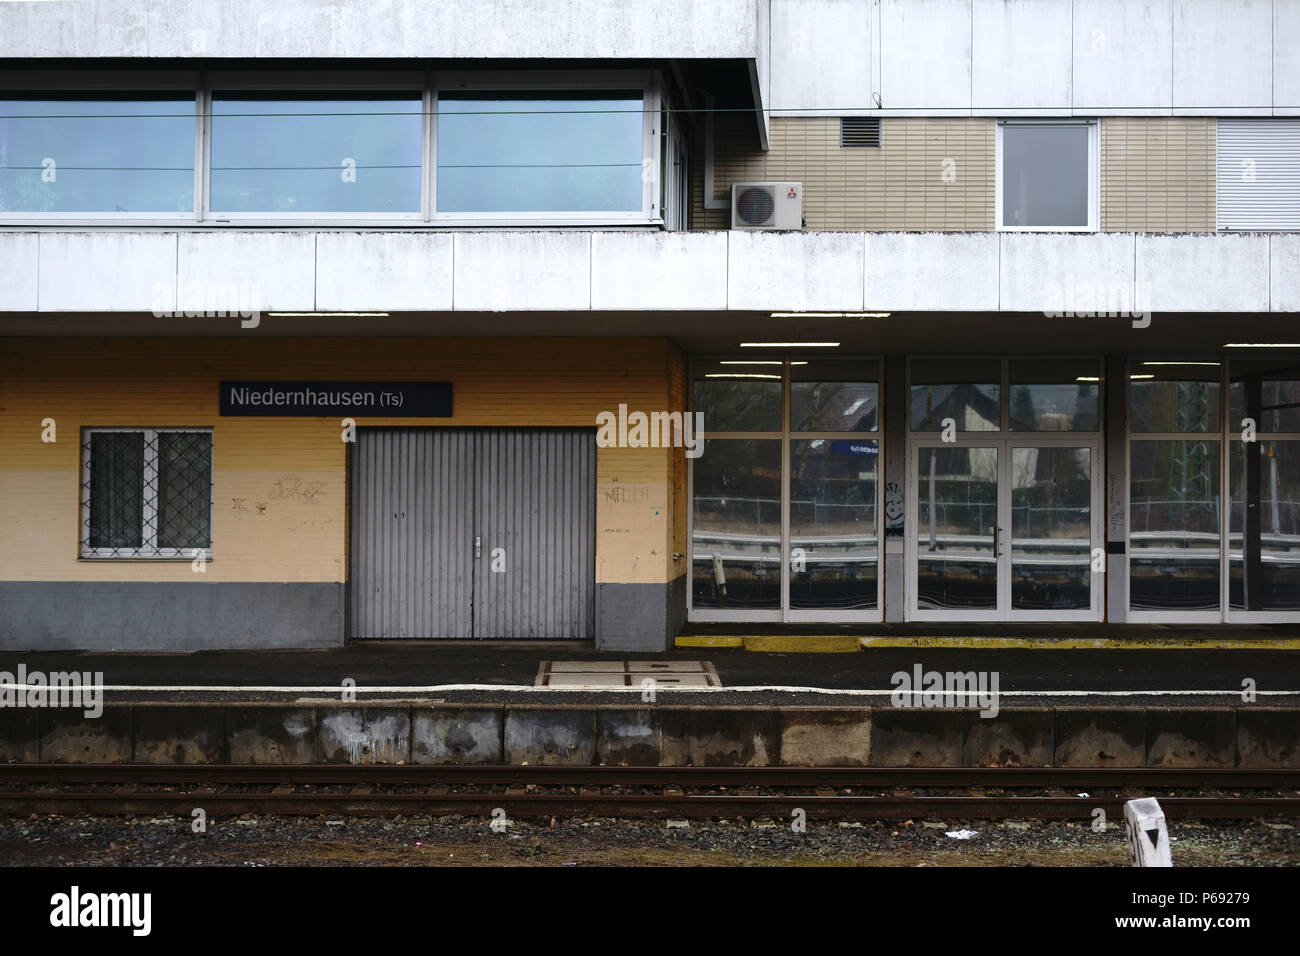 Ein leeres Bahnhofsgebäude der Bahnhof Niedernhausen mit vergitterten Fenstern und eine klinkerfassade. Stockfoto